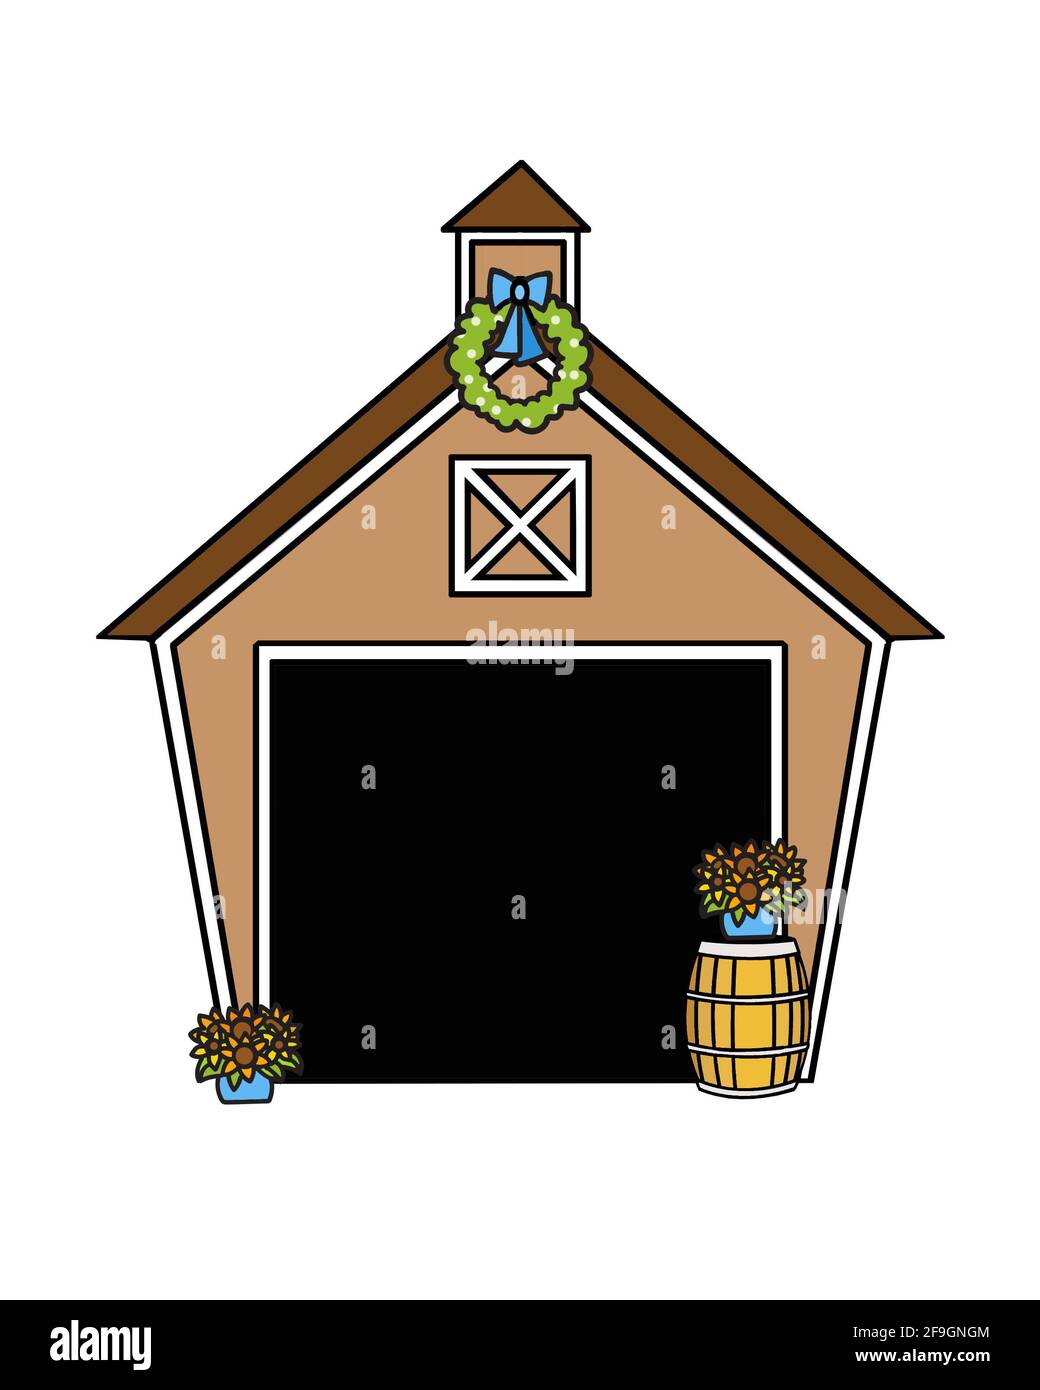 Illustration d'une grange décorée pour un événement ou un mariage. Tonneau à vin, fleurs et couronne. Arrière-plan blanc. Banque D'Images